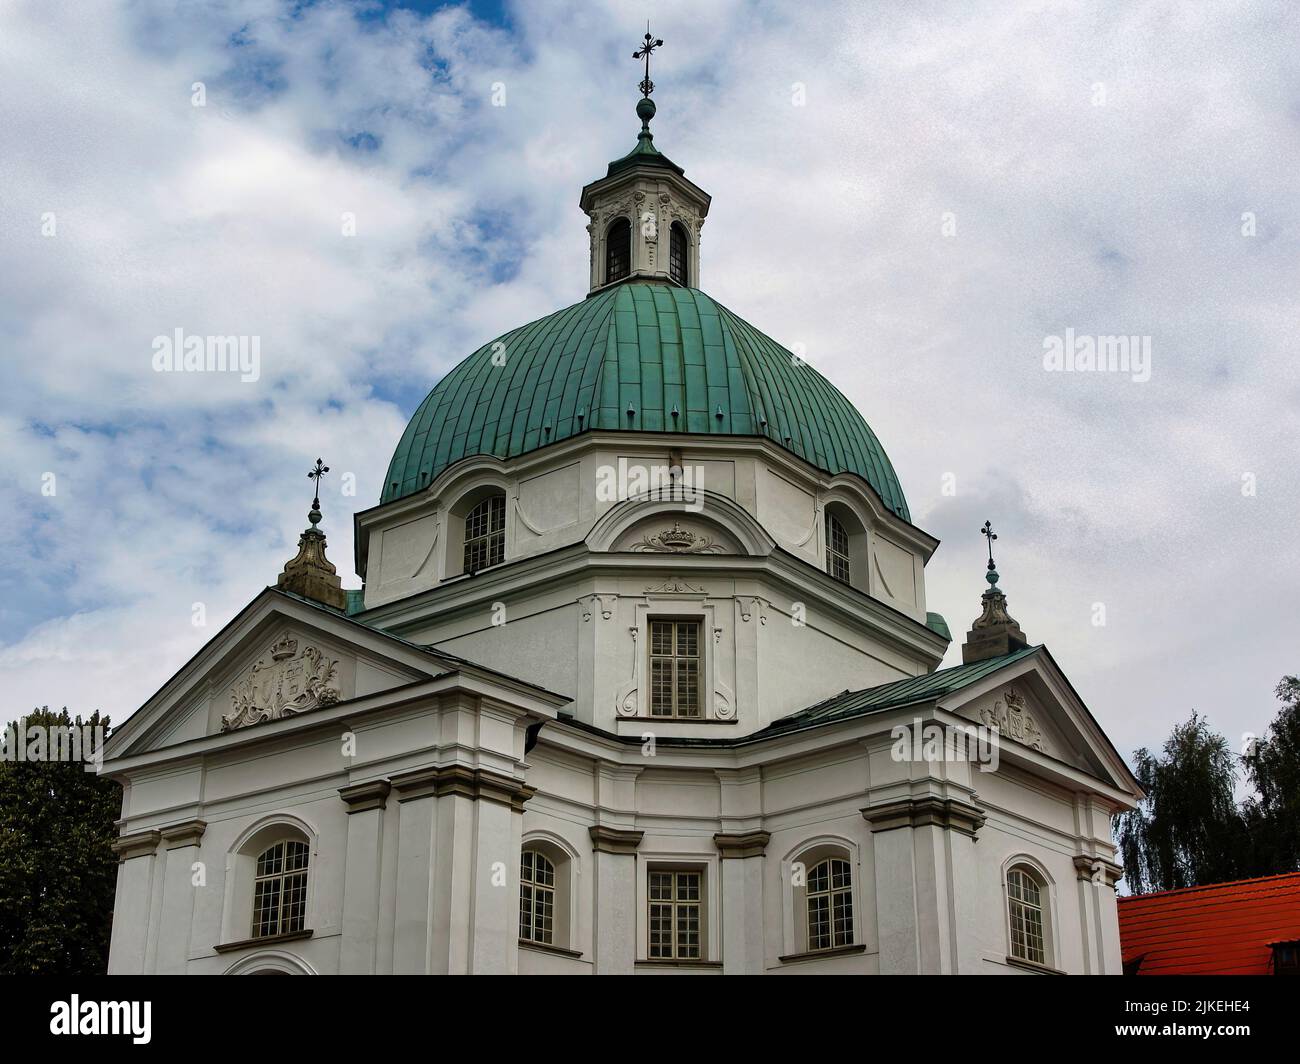 Varsovia, la capital de Polonia, con una arquitectura que va desde iglesias góticas y edificios neoclásicos hasta bloques de la era soviética y rascacielos modernos. Foto de stock